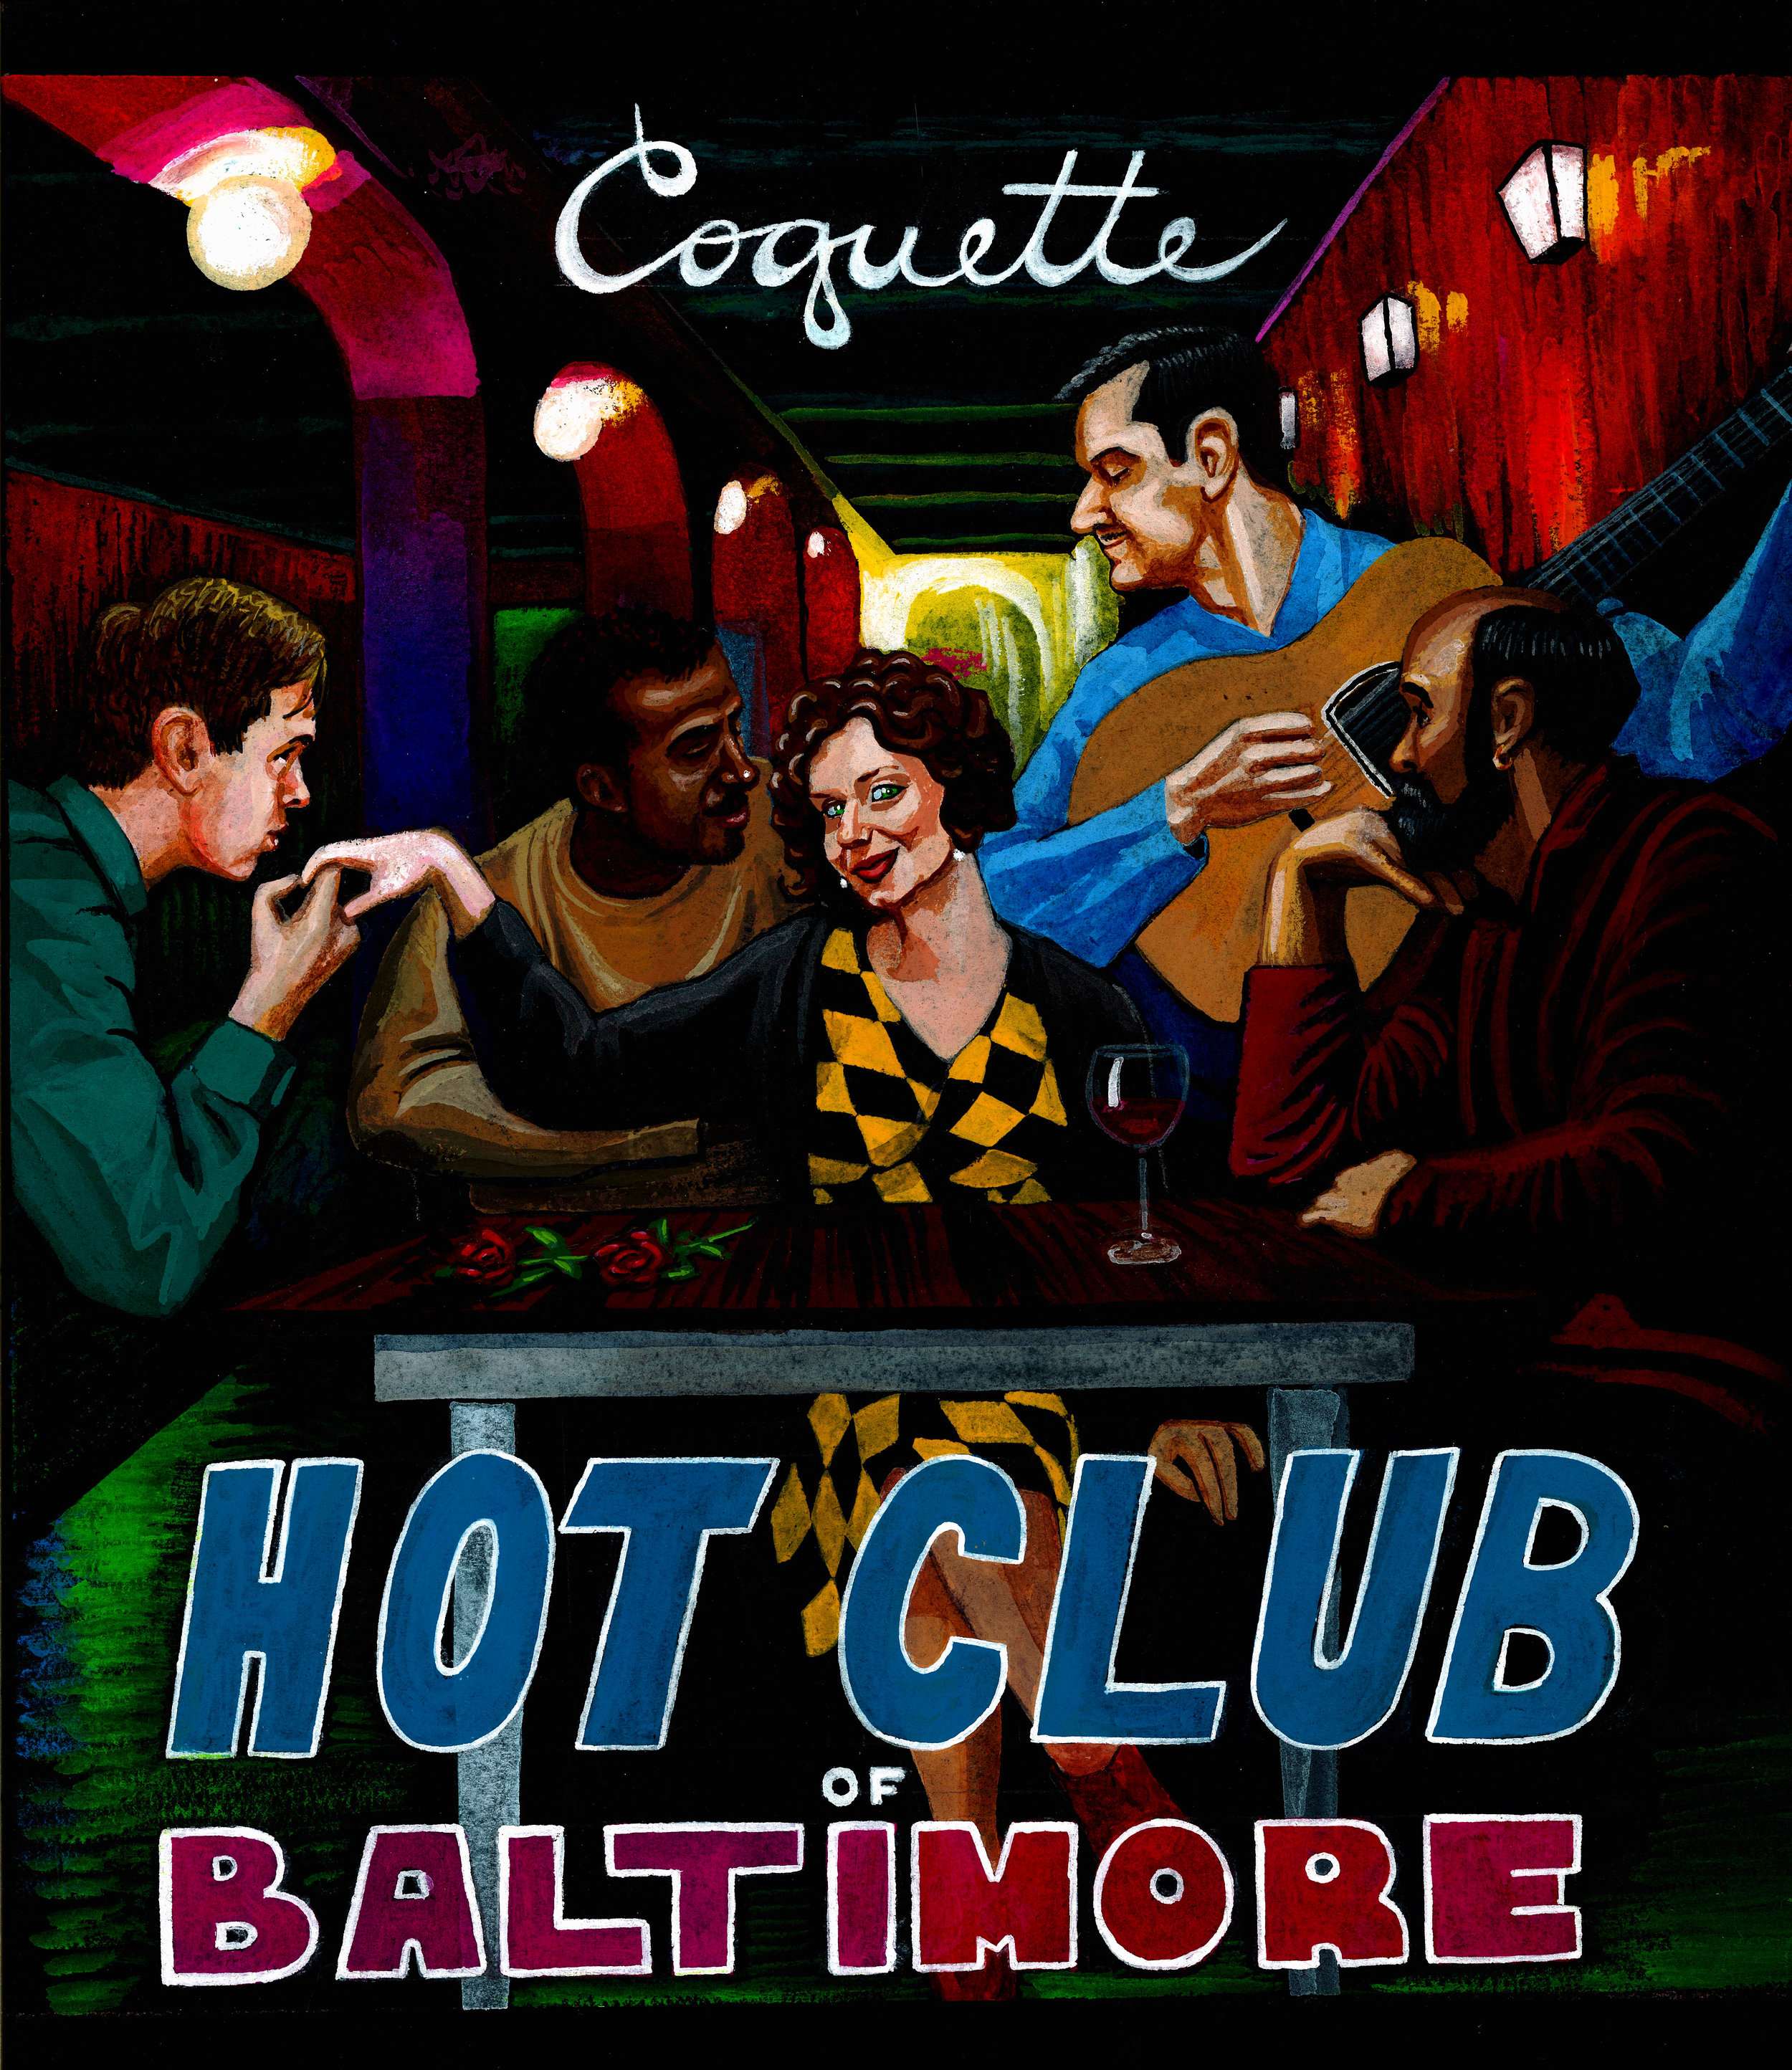 "Coquette" Hot Club of Baltimore Album Cover